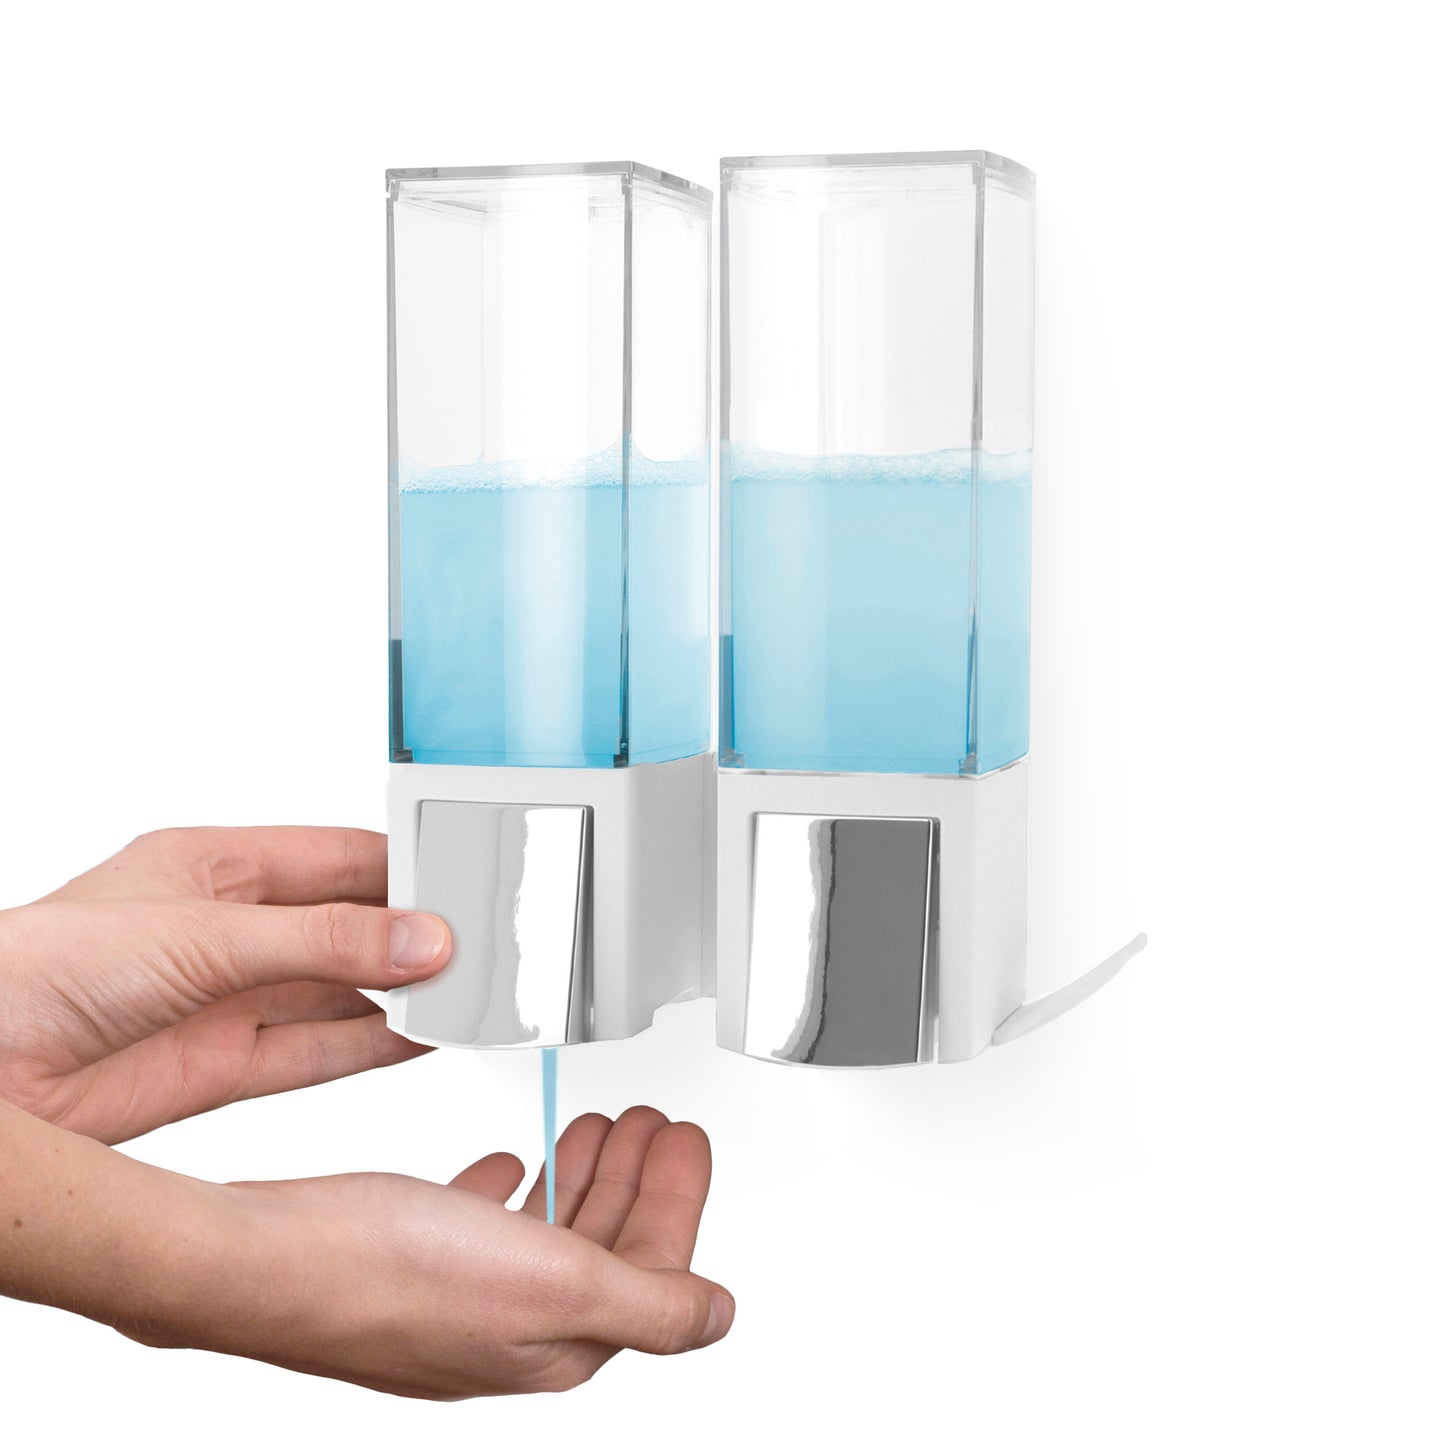 Double distributeur de savon mural rechargeable Clever blanc